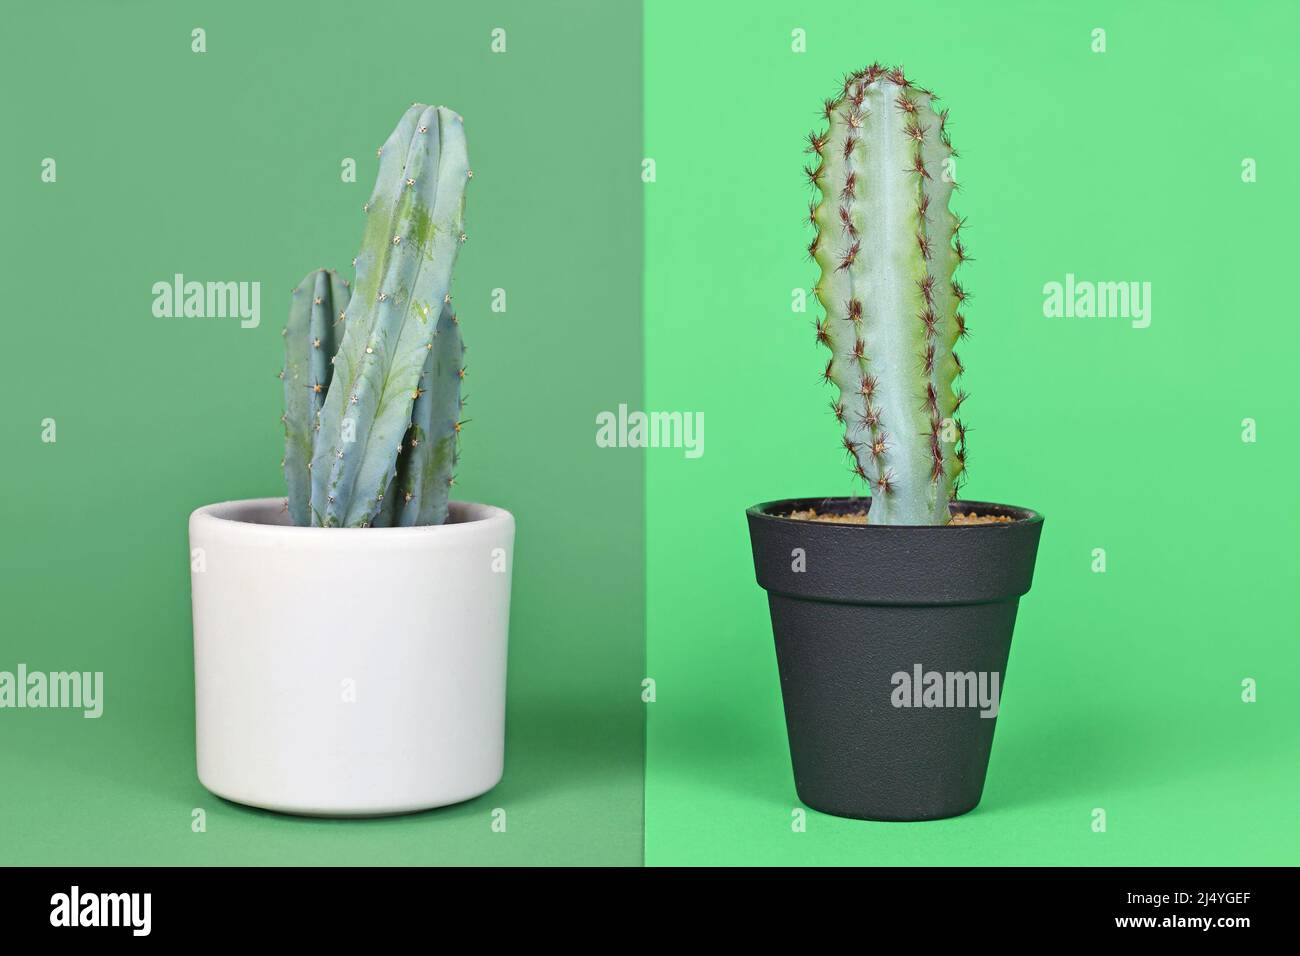 Vergleich zwischen realer und gefälschter Pflanze. Eingetopfter natürlicher Myrtillocactus Kaktus neben einer Kunststoffpflanze Stockfoto